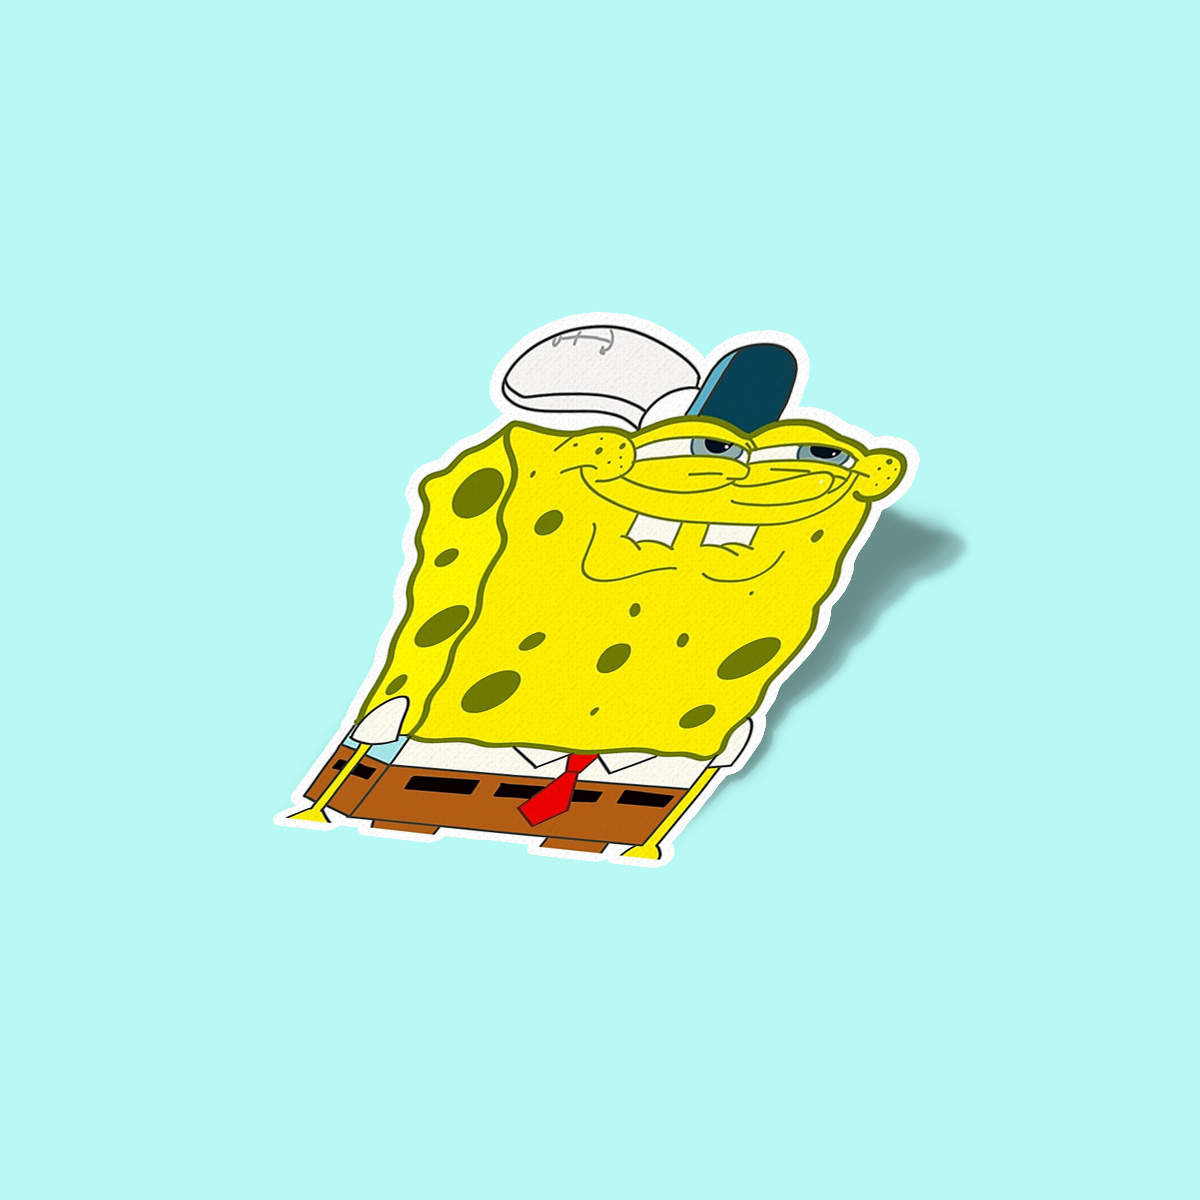 استیکر Spongebob meme Laugh